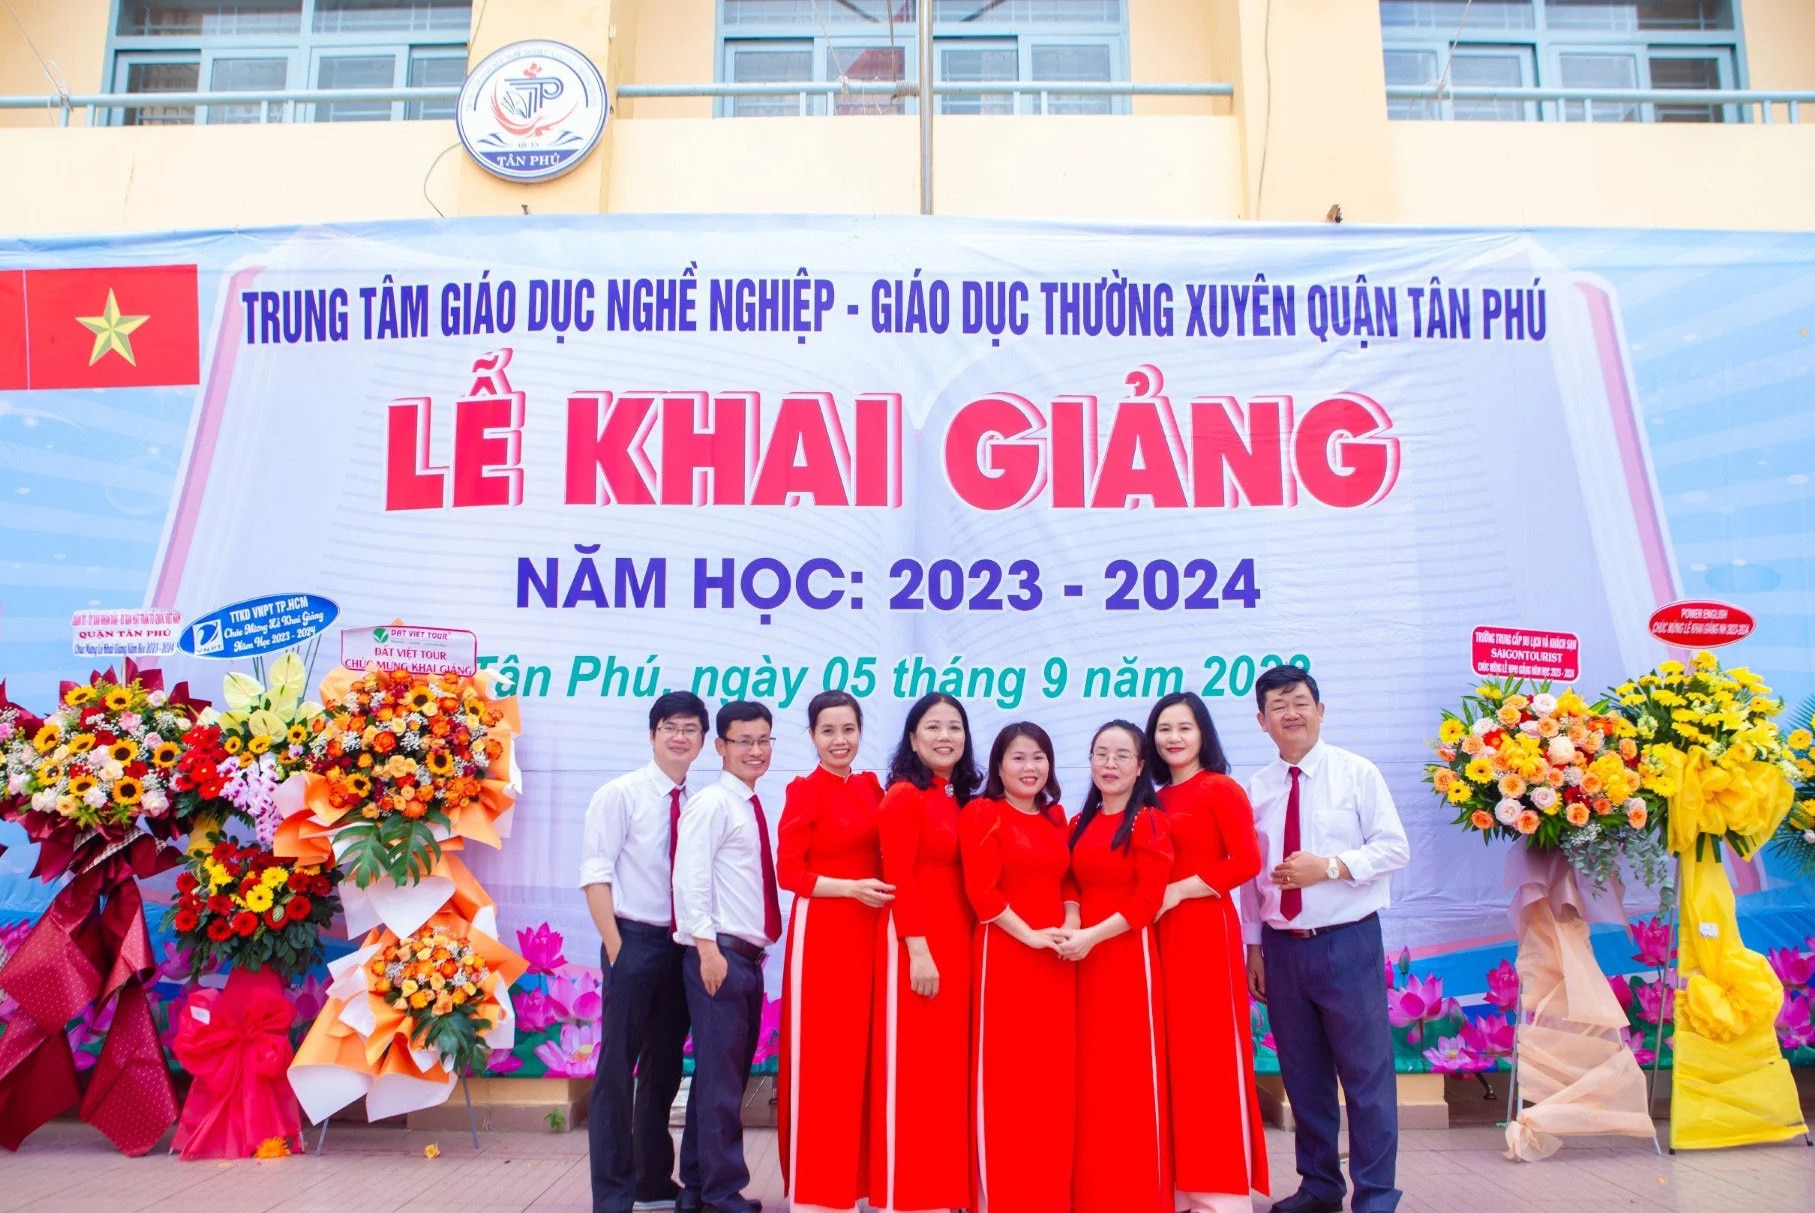 Cô Lê Thị Trúc (thứ tư từ trái sang) cùng đồng nghiệp trong ngày khai giảng tại Trung tâm GDTX quận Tân Phú (Ảnh do nhân vật cung cấp)